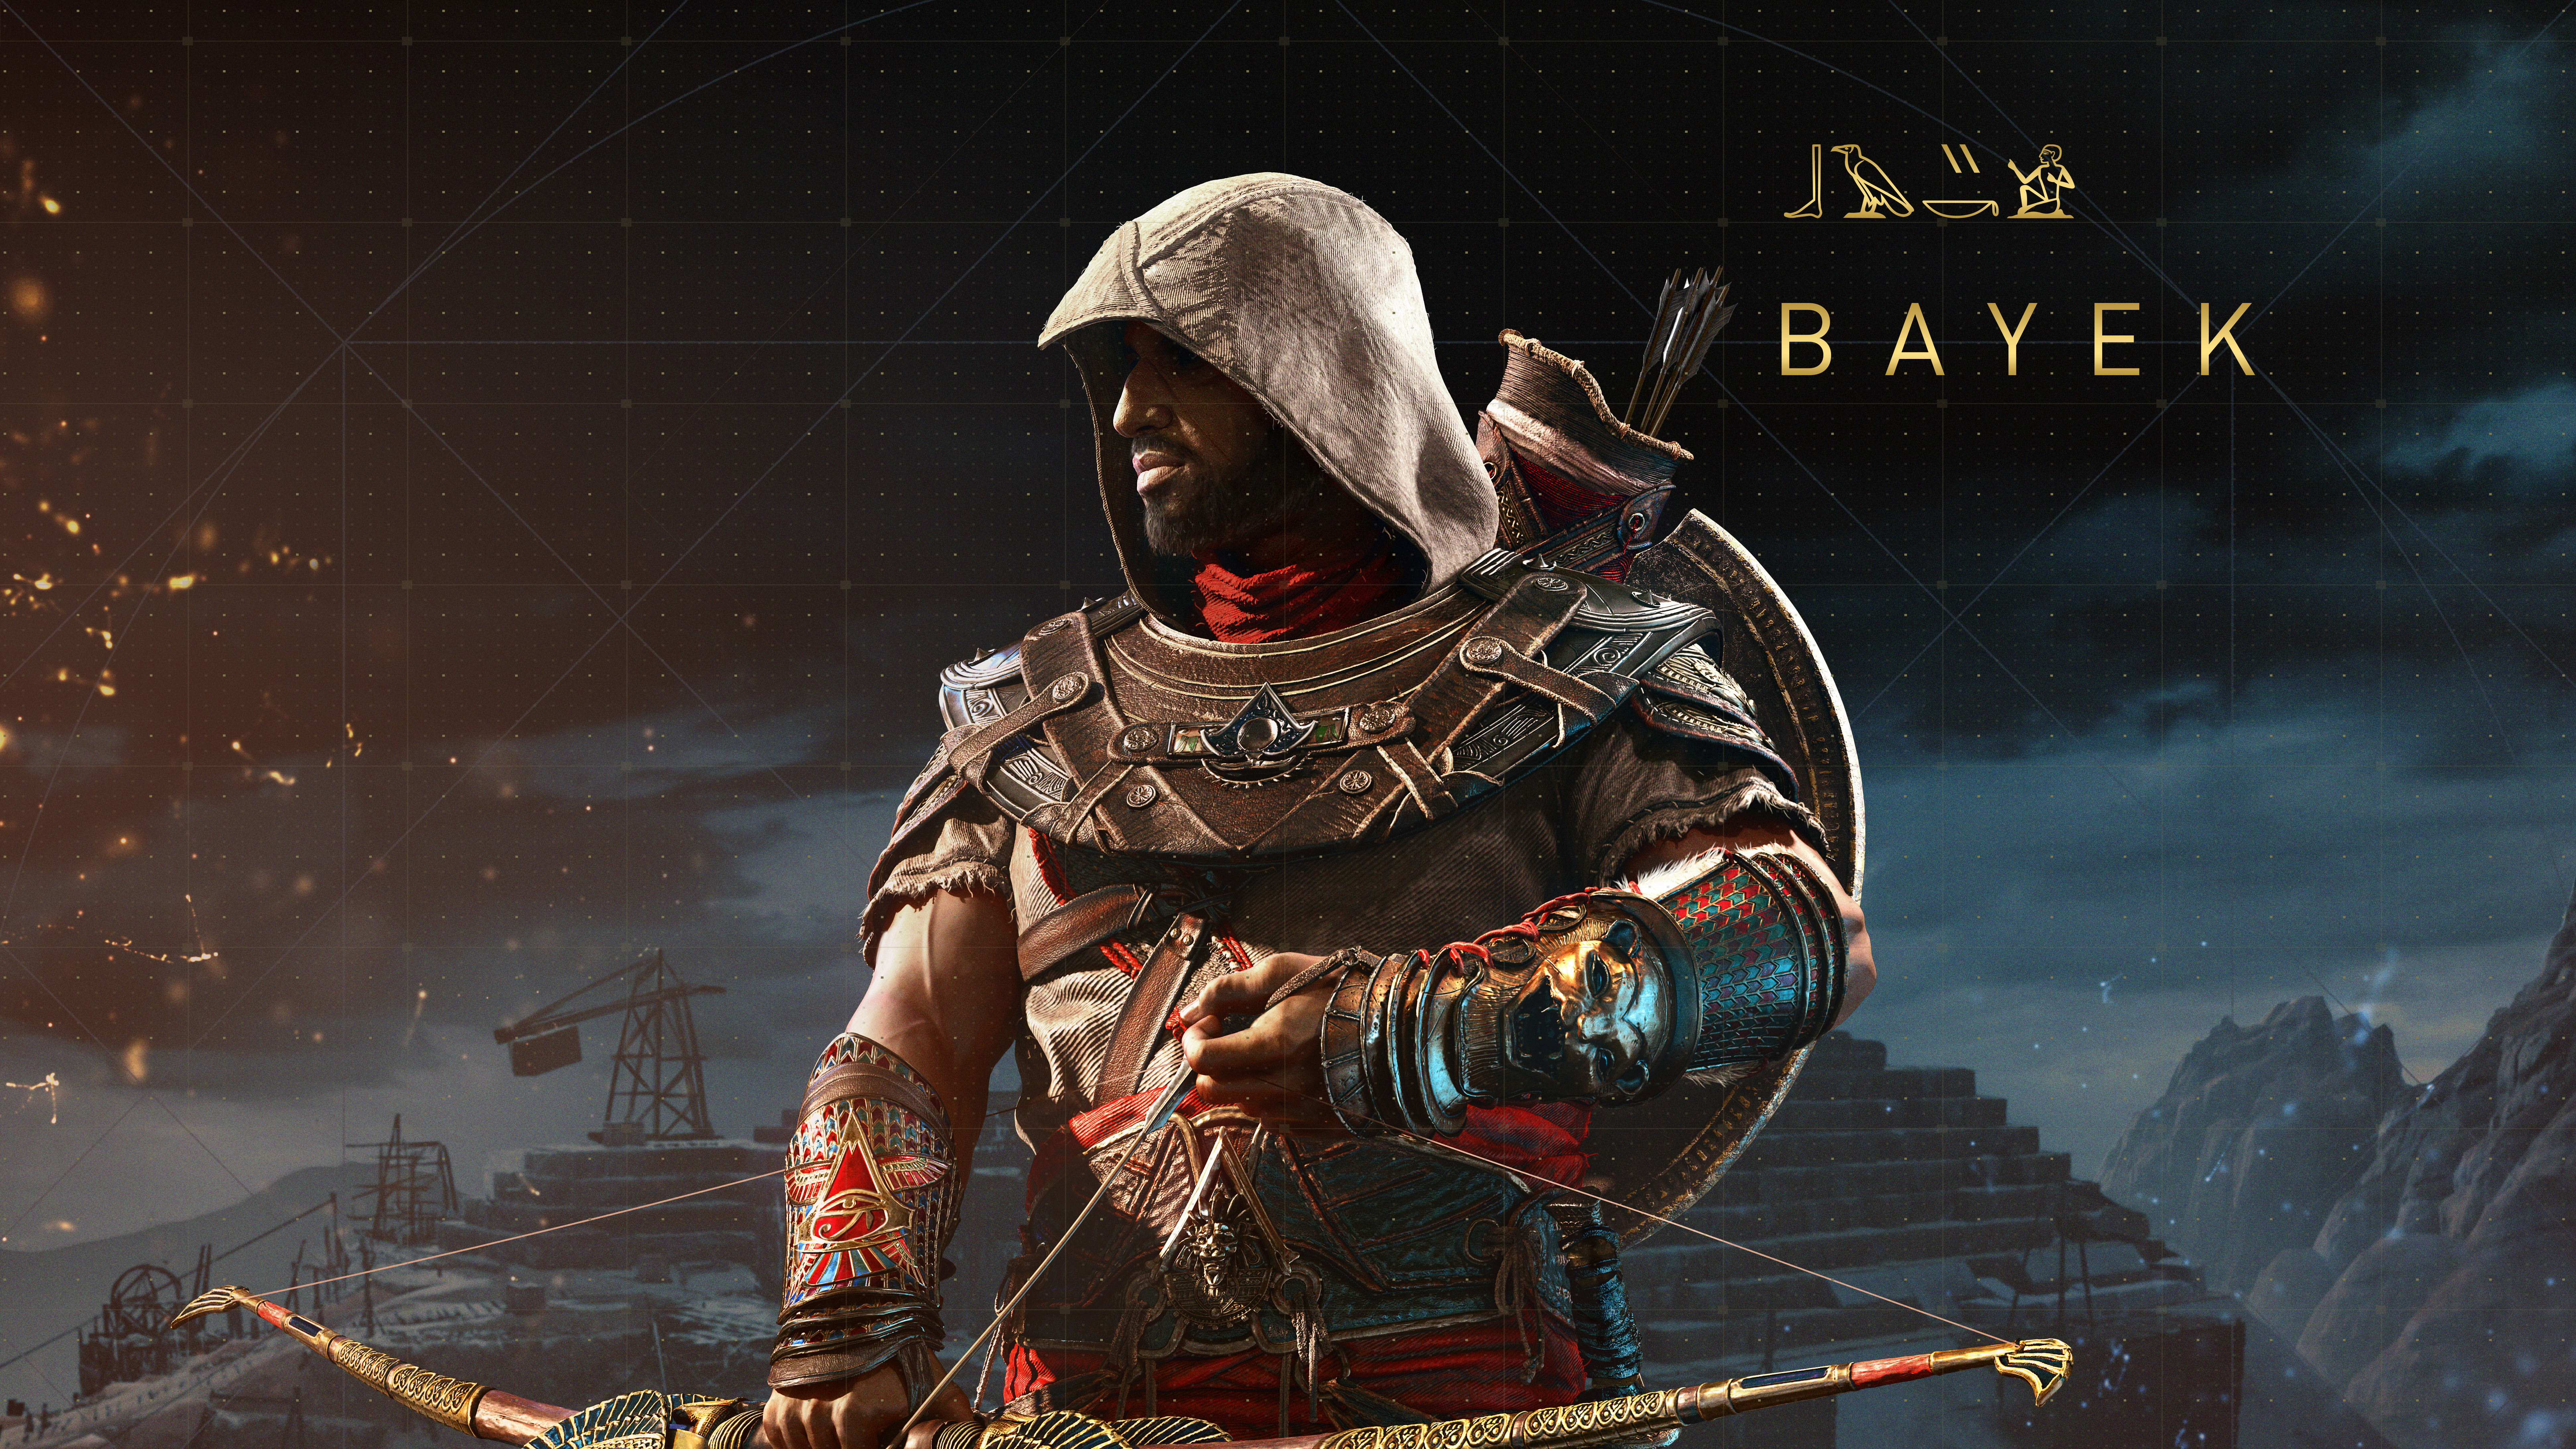 Assassins Creed Origins Wallpaper 4k , HD Wallpaper & Backgrounds